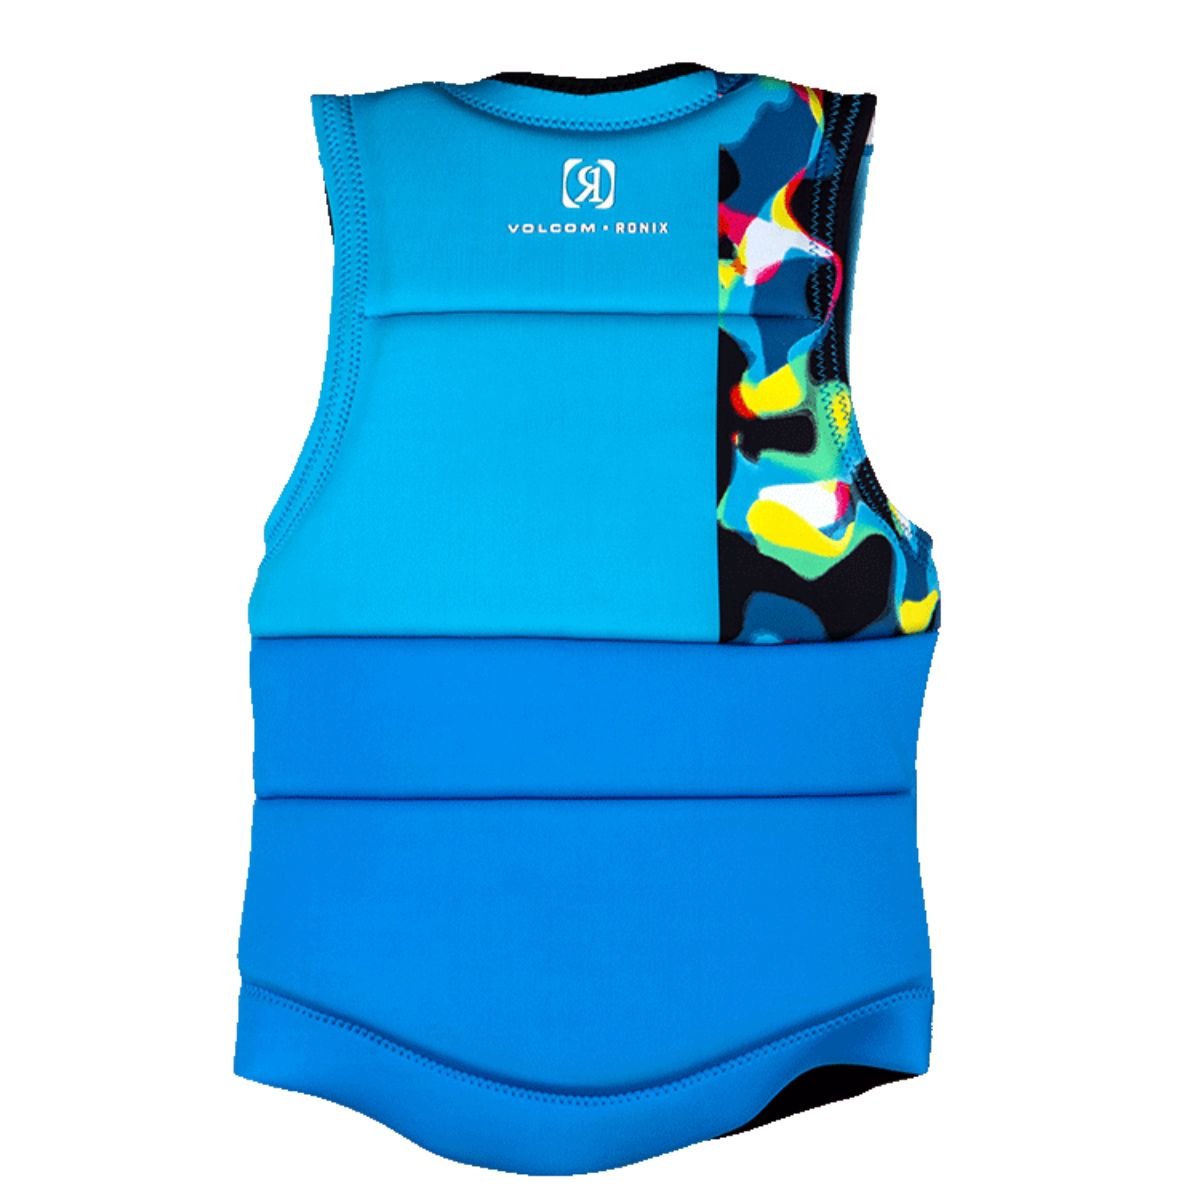 Ronix Women's Volcom Comp Wake Vest in Aqua Lava - BoardCo